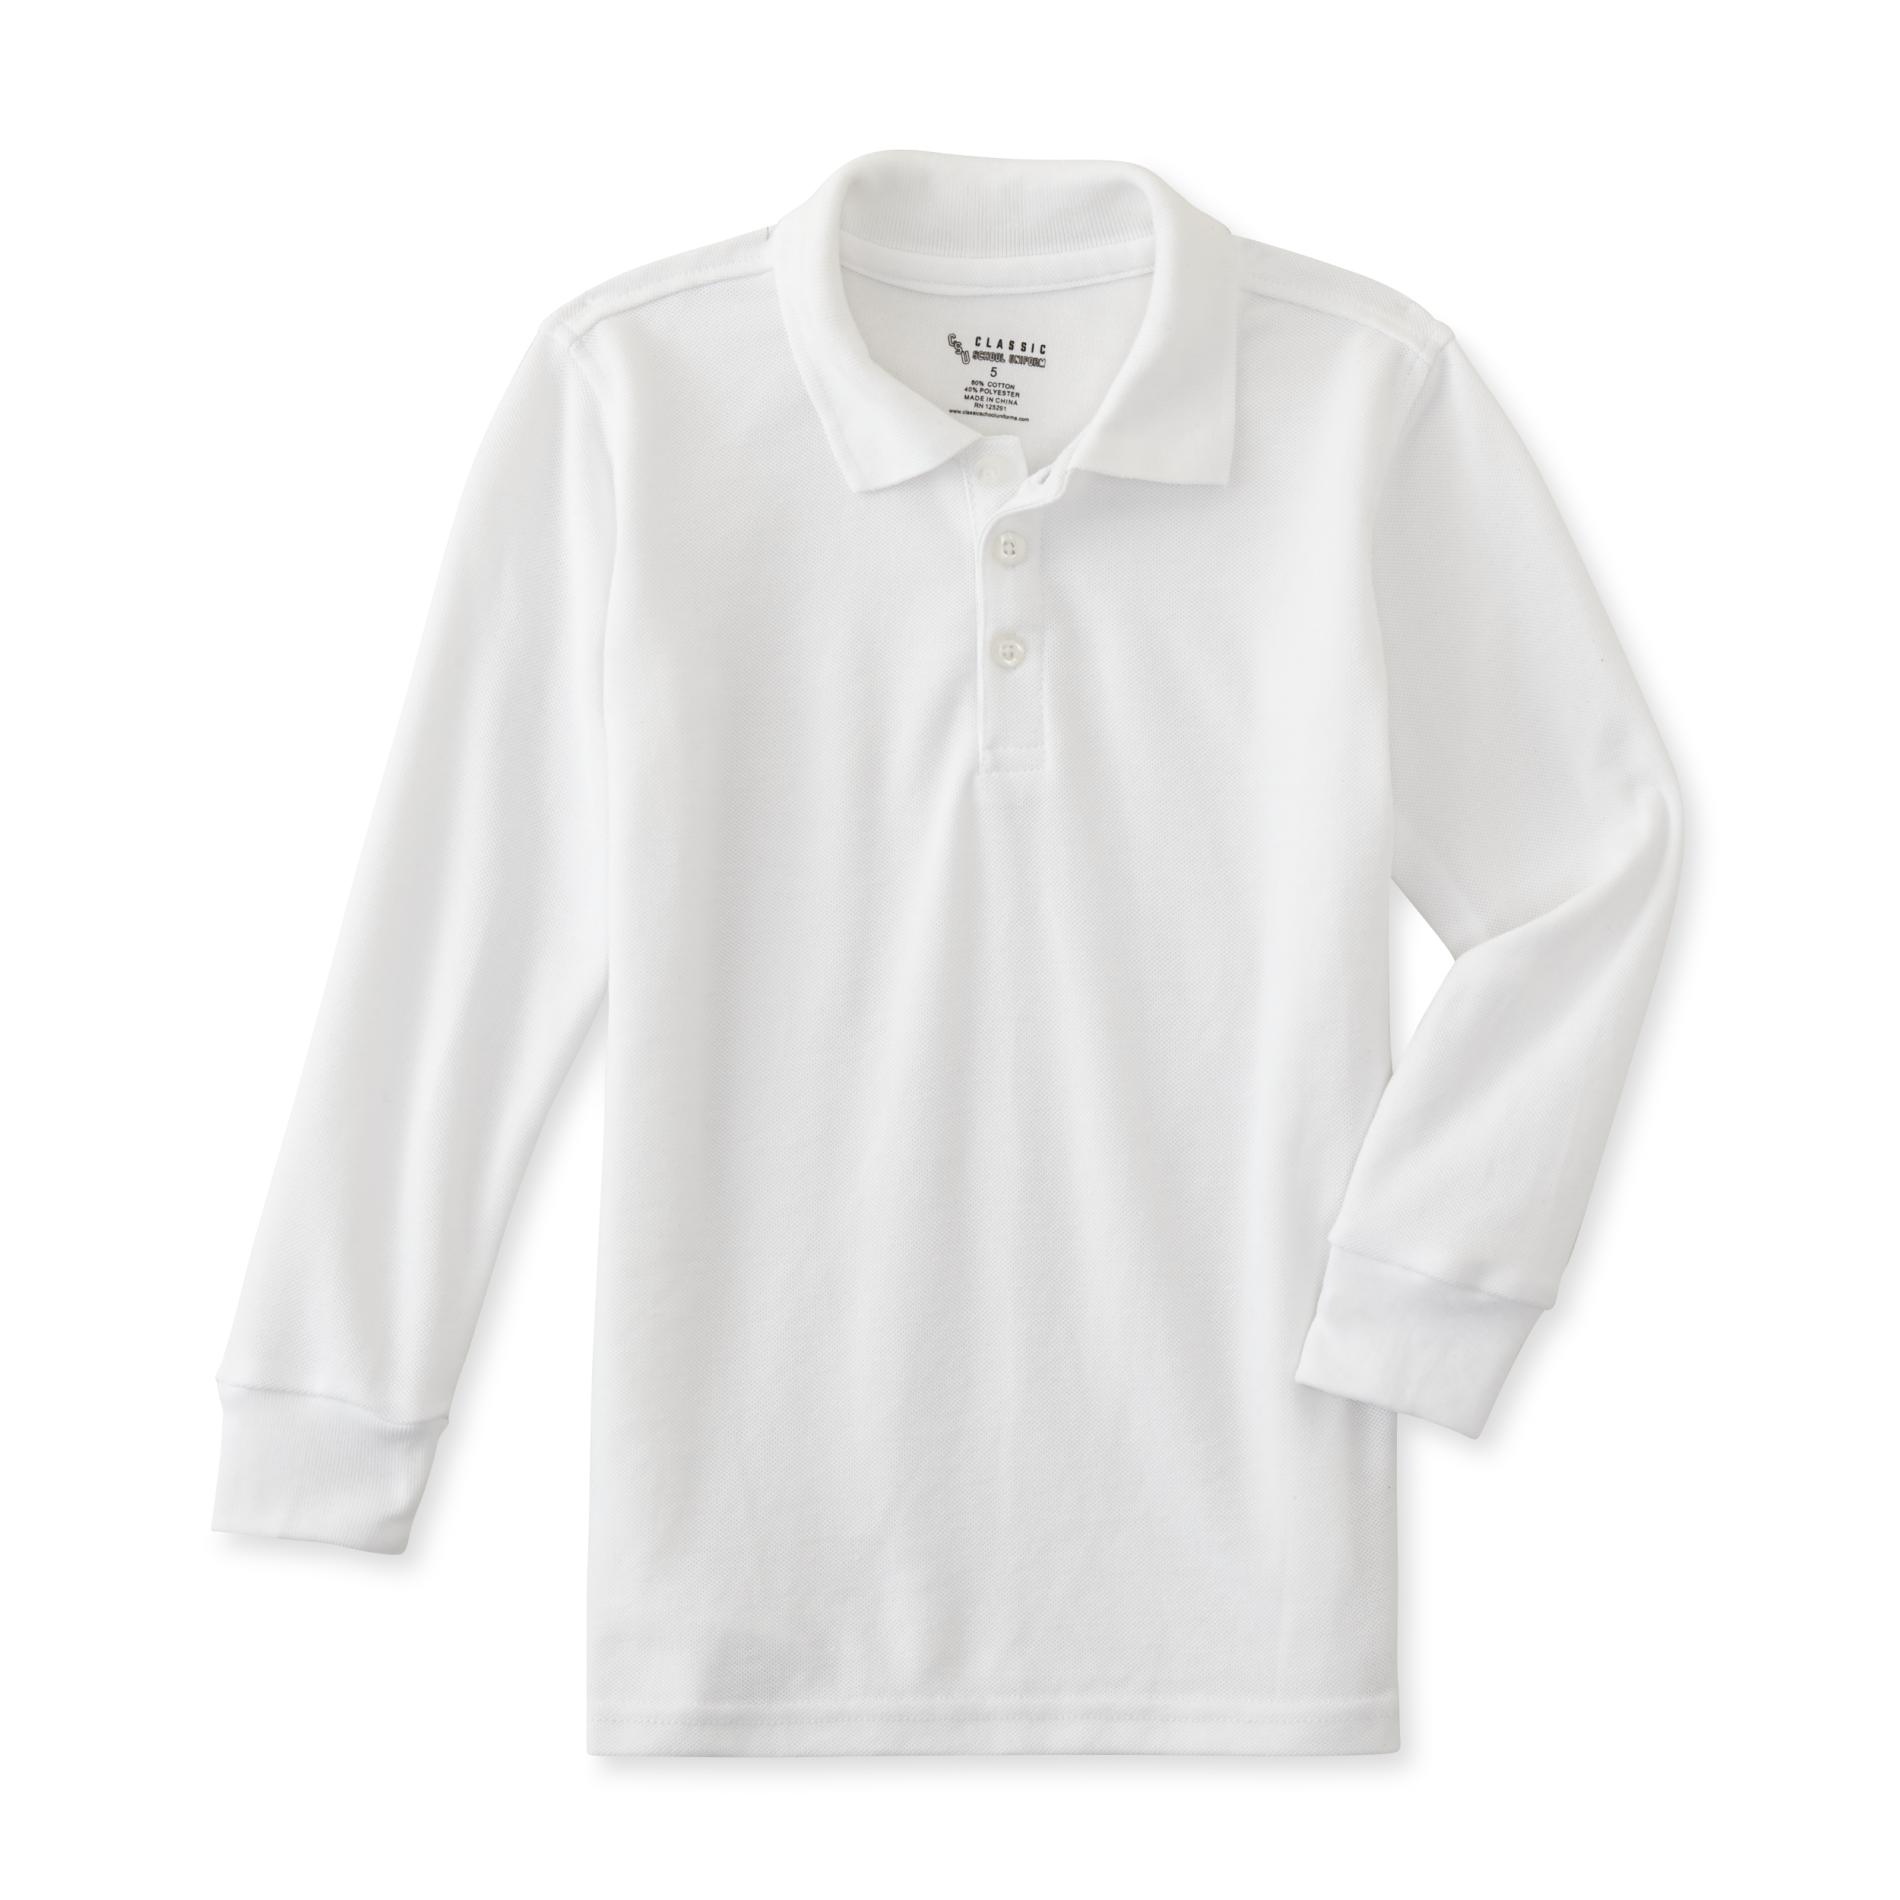 Basic Editions Boys' Long-Sleeve Polo Shirt